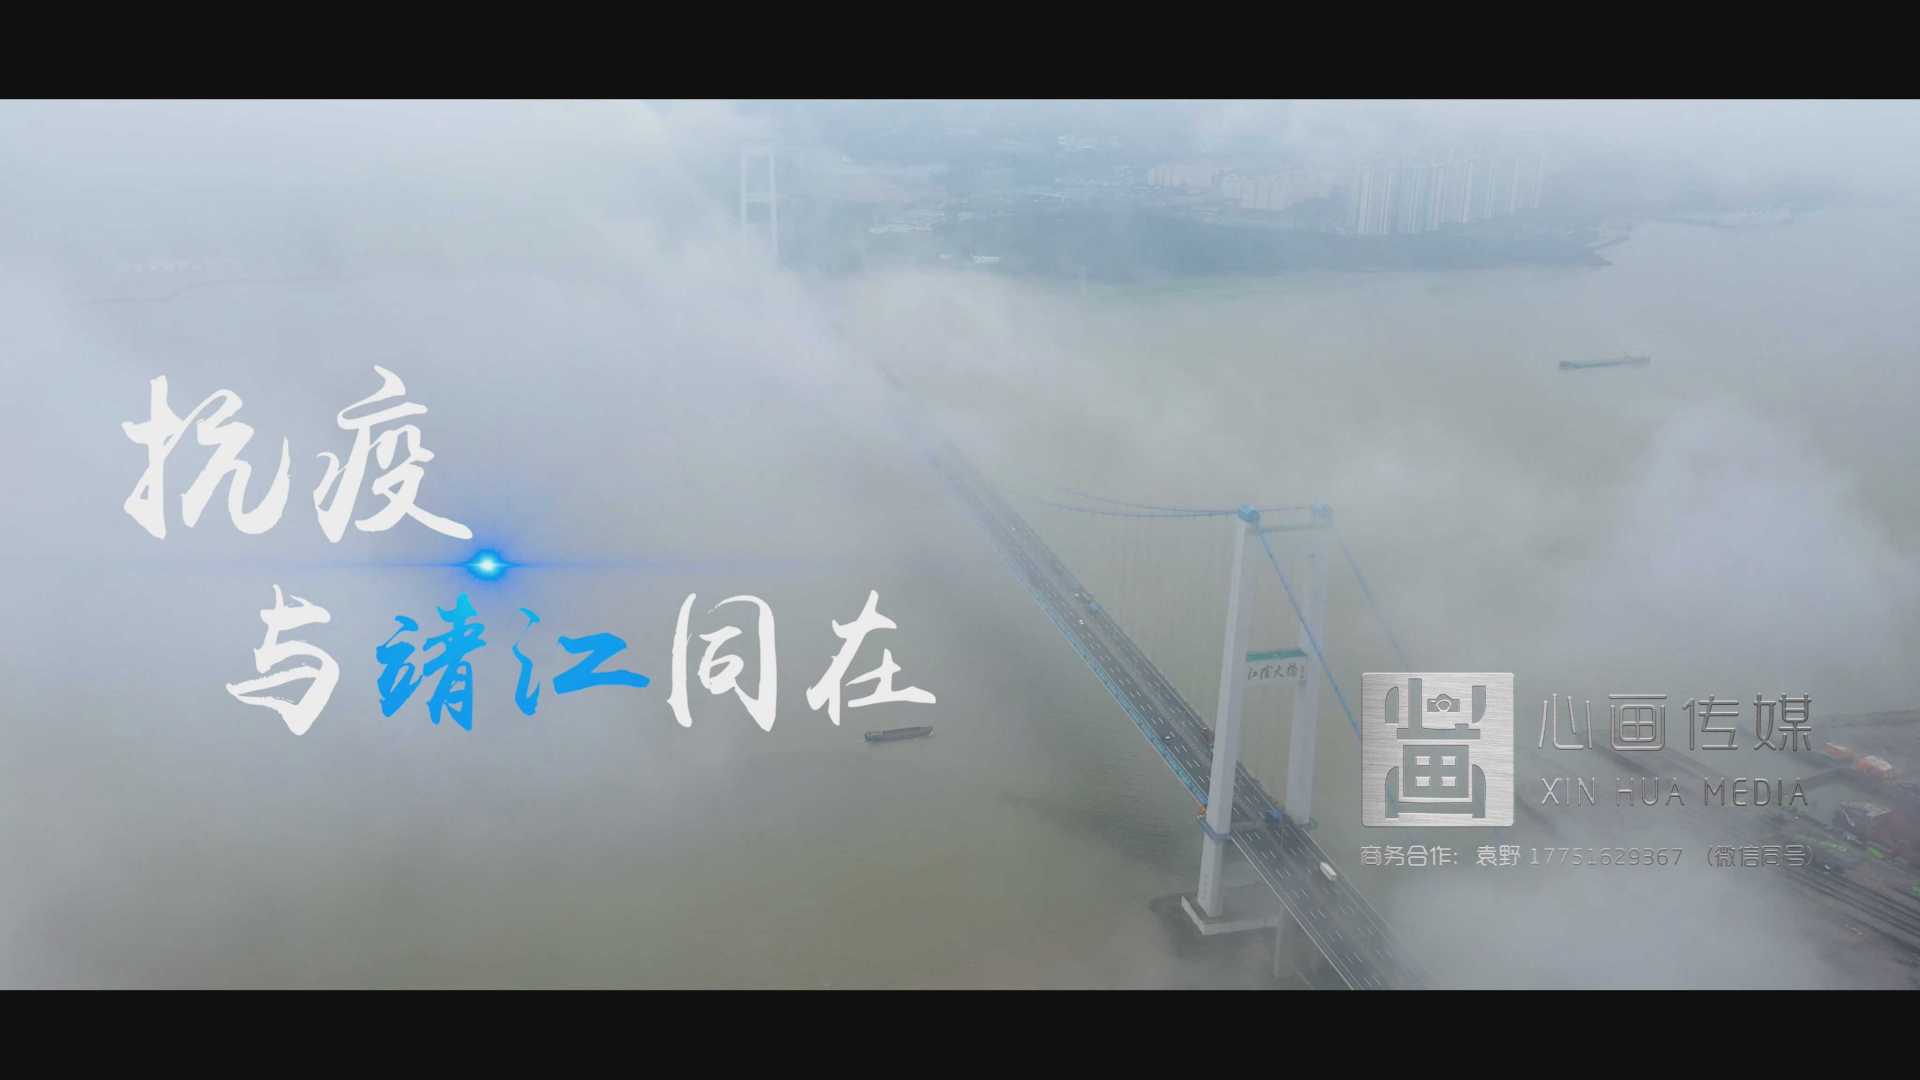 靖江市城市抗疫展示片《抗疫 与靖江同在》